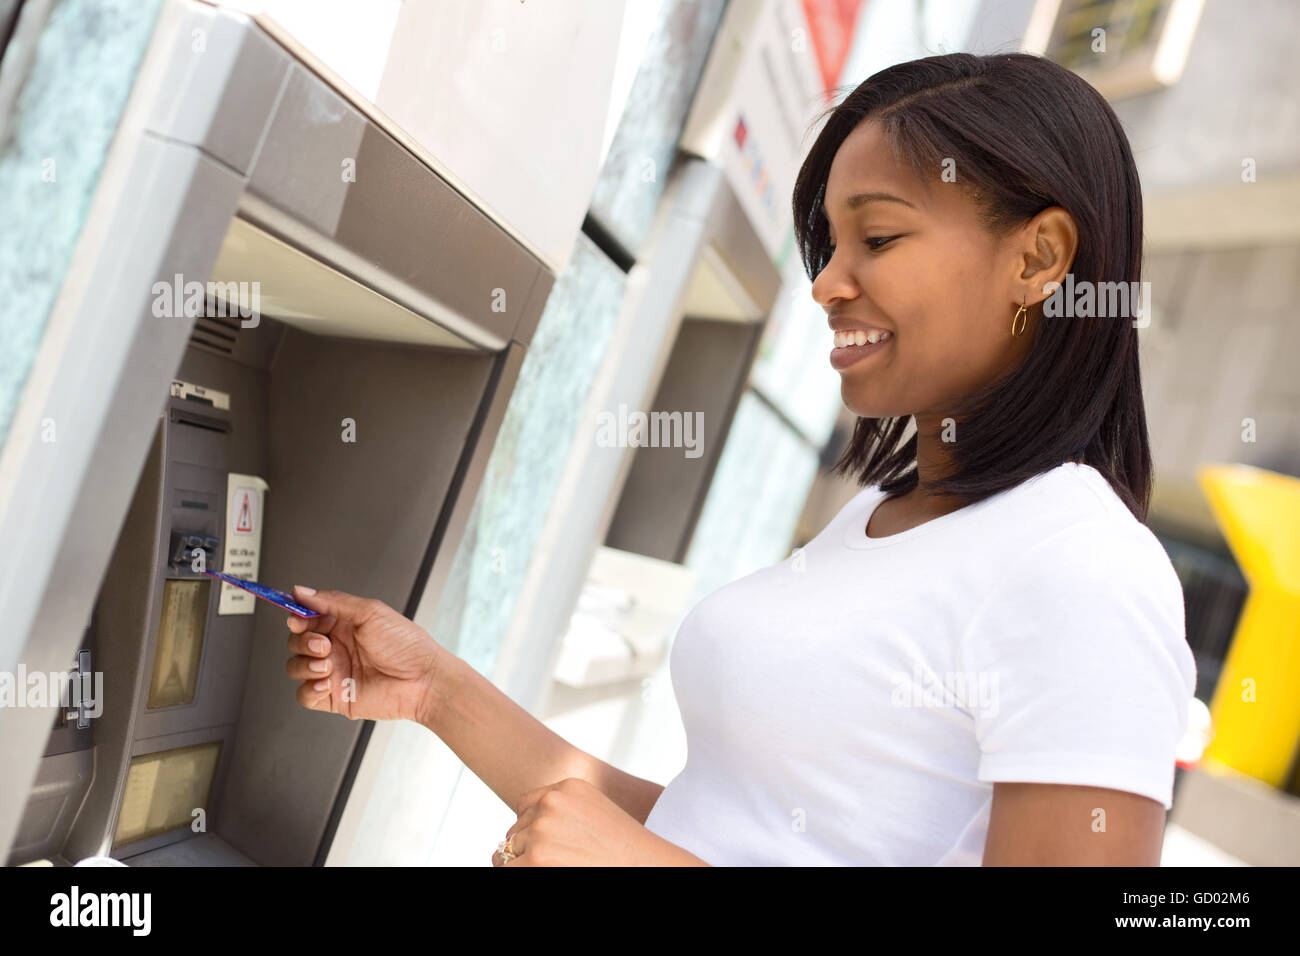 junge Frau an den Geldautomaten Geld abheben Stockfoto